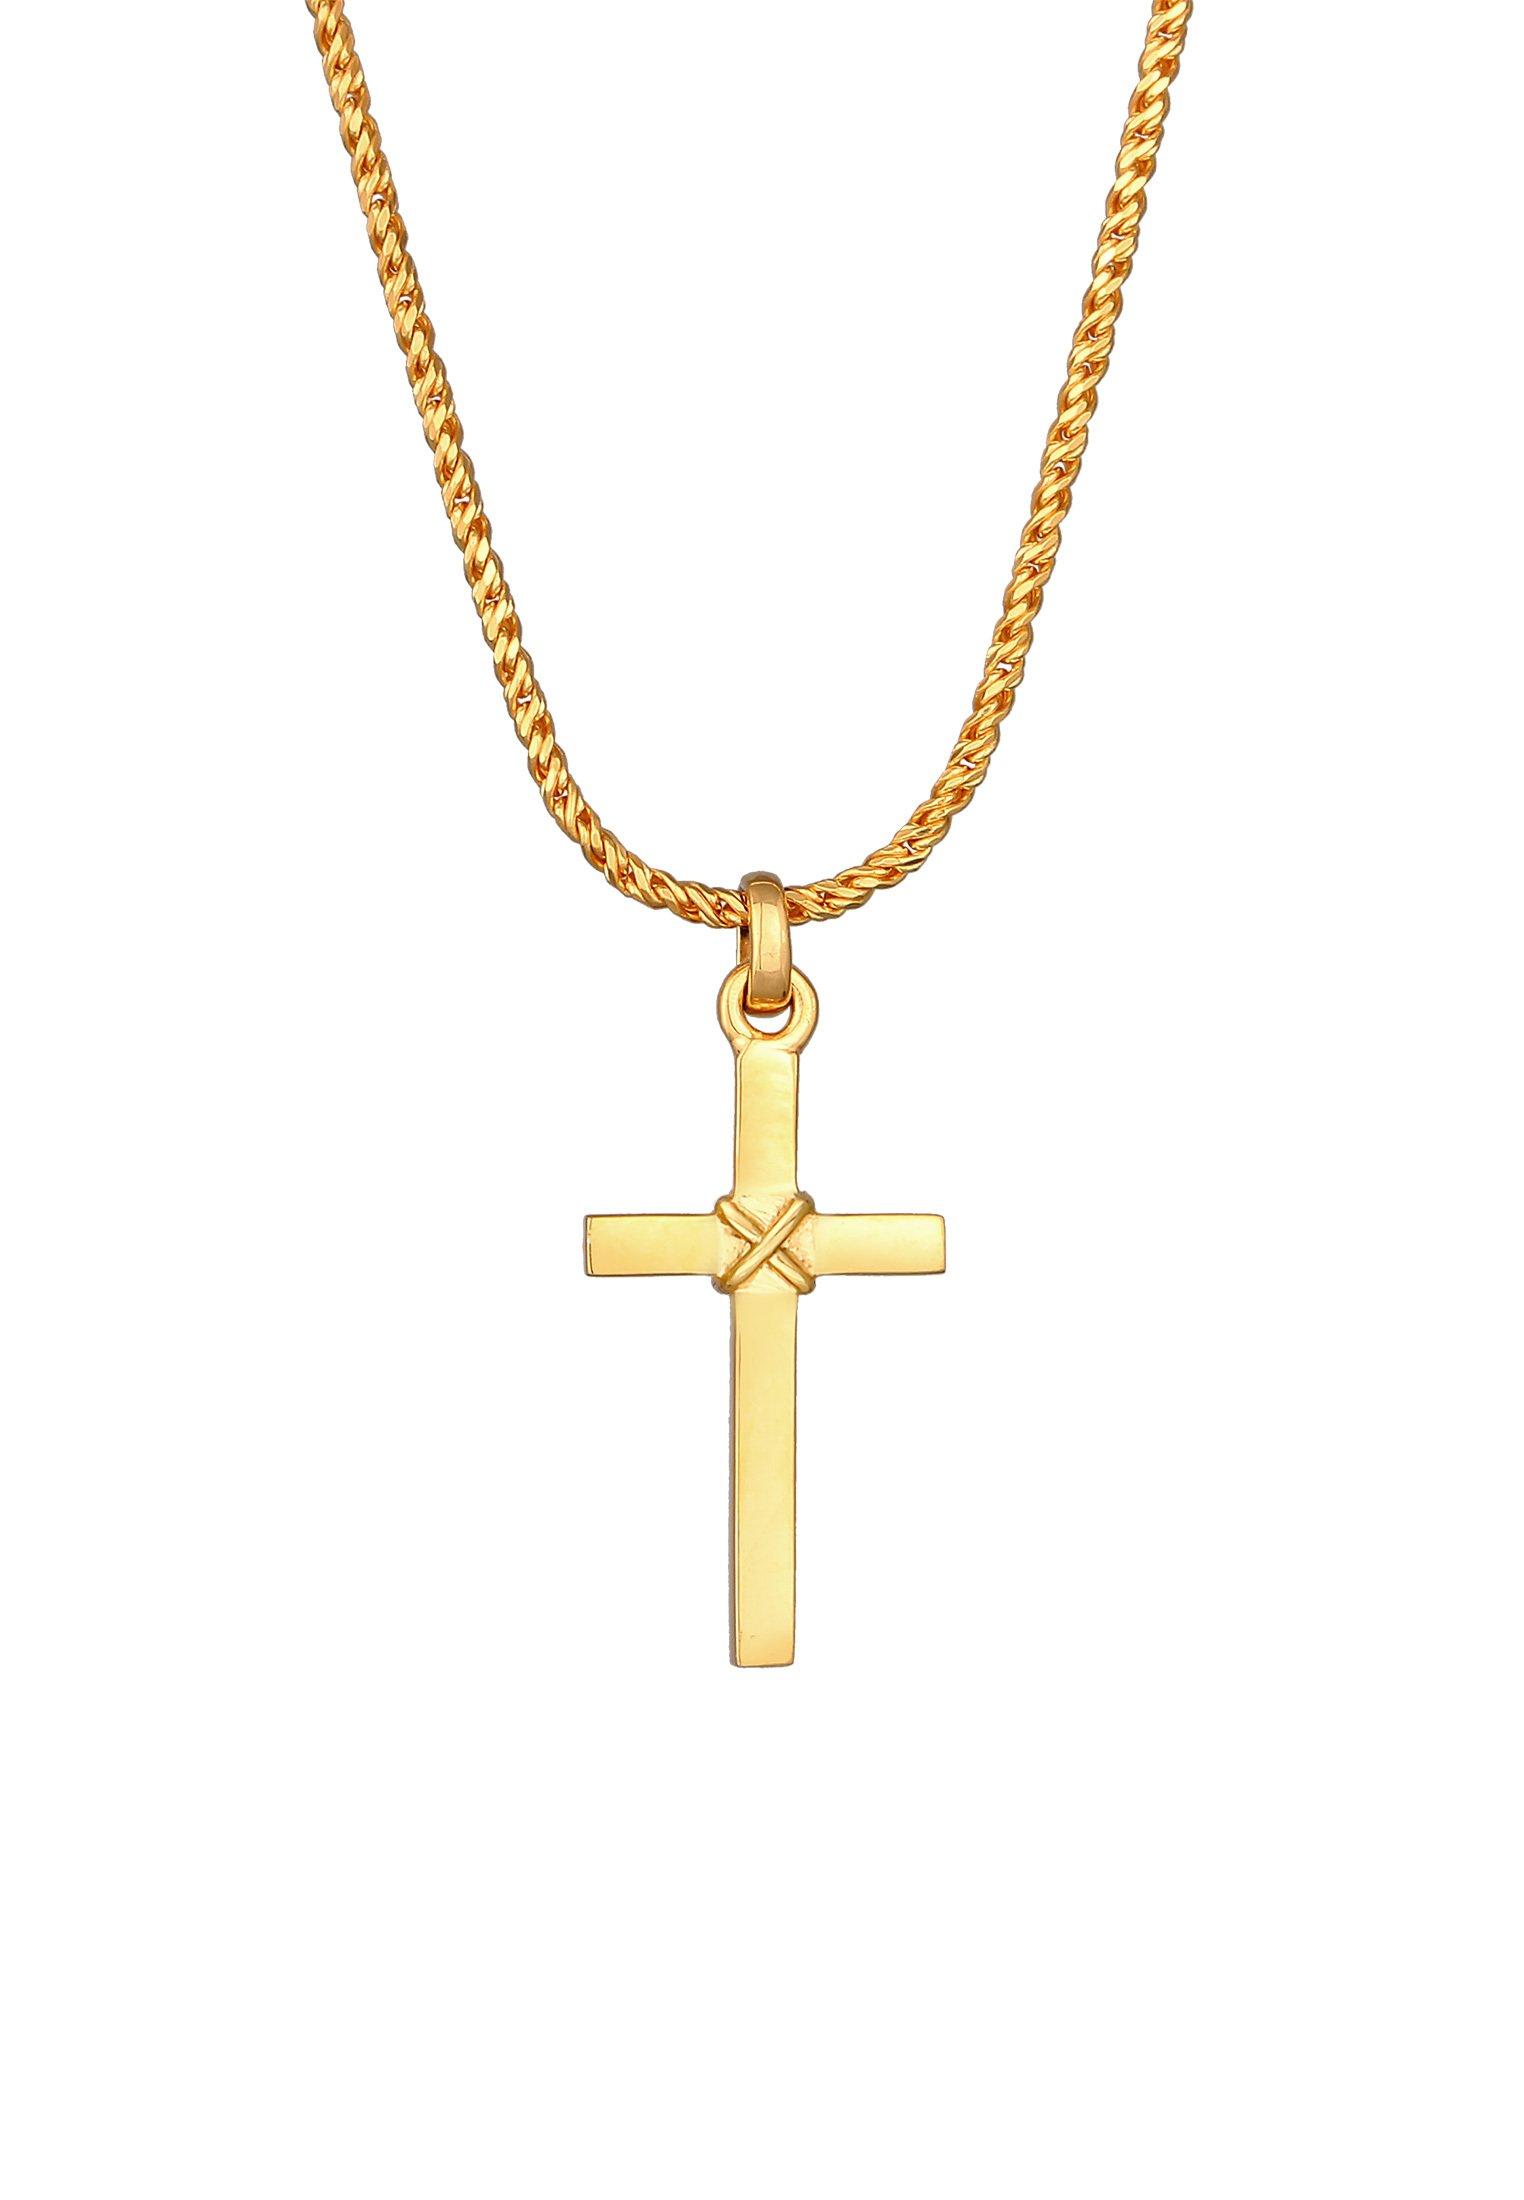 Kuzzoi Halskette Kreuz Flach Kordelkette 925 Silber | online kaufen - MANOR